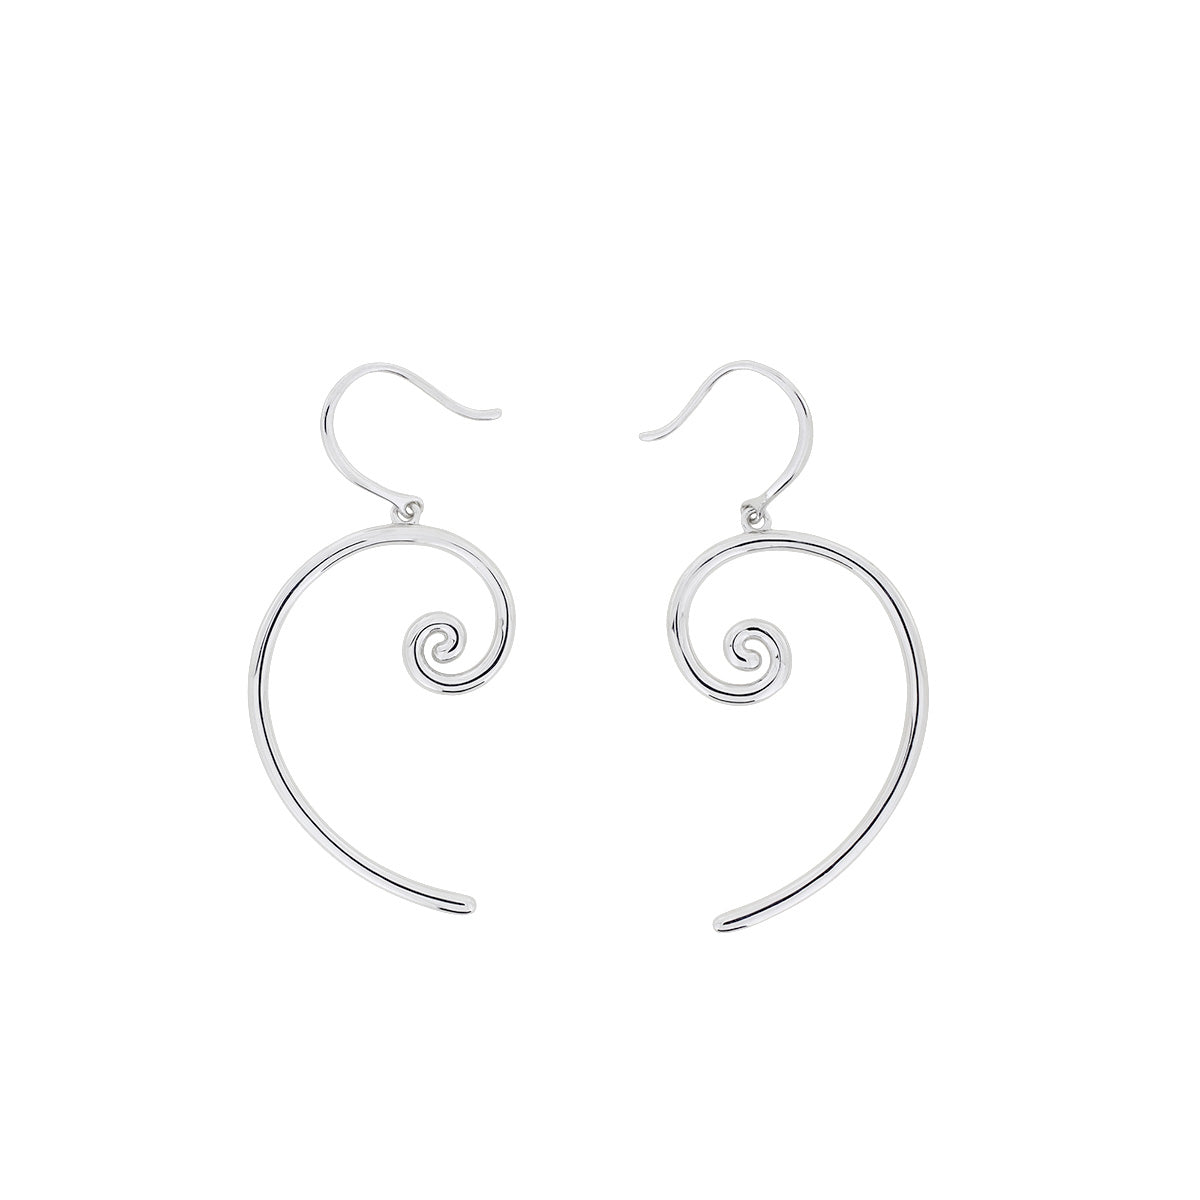 Spiral Drop Earrings in Sterling Silver